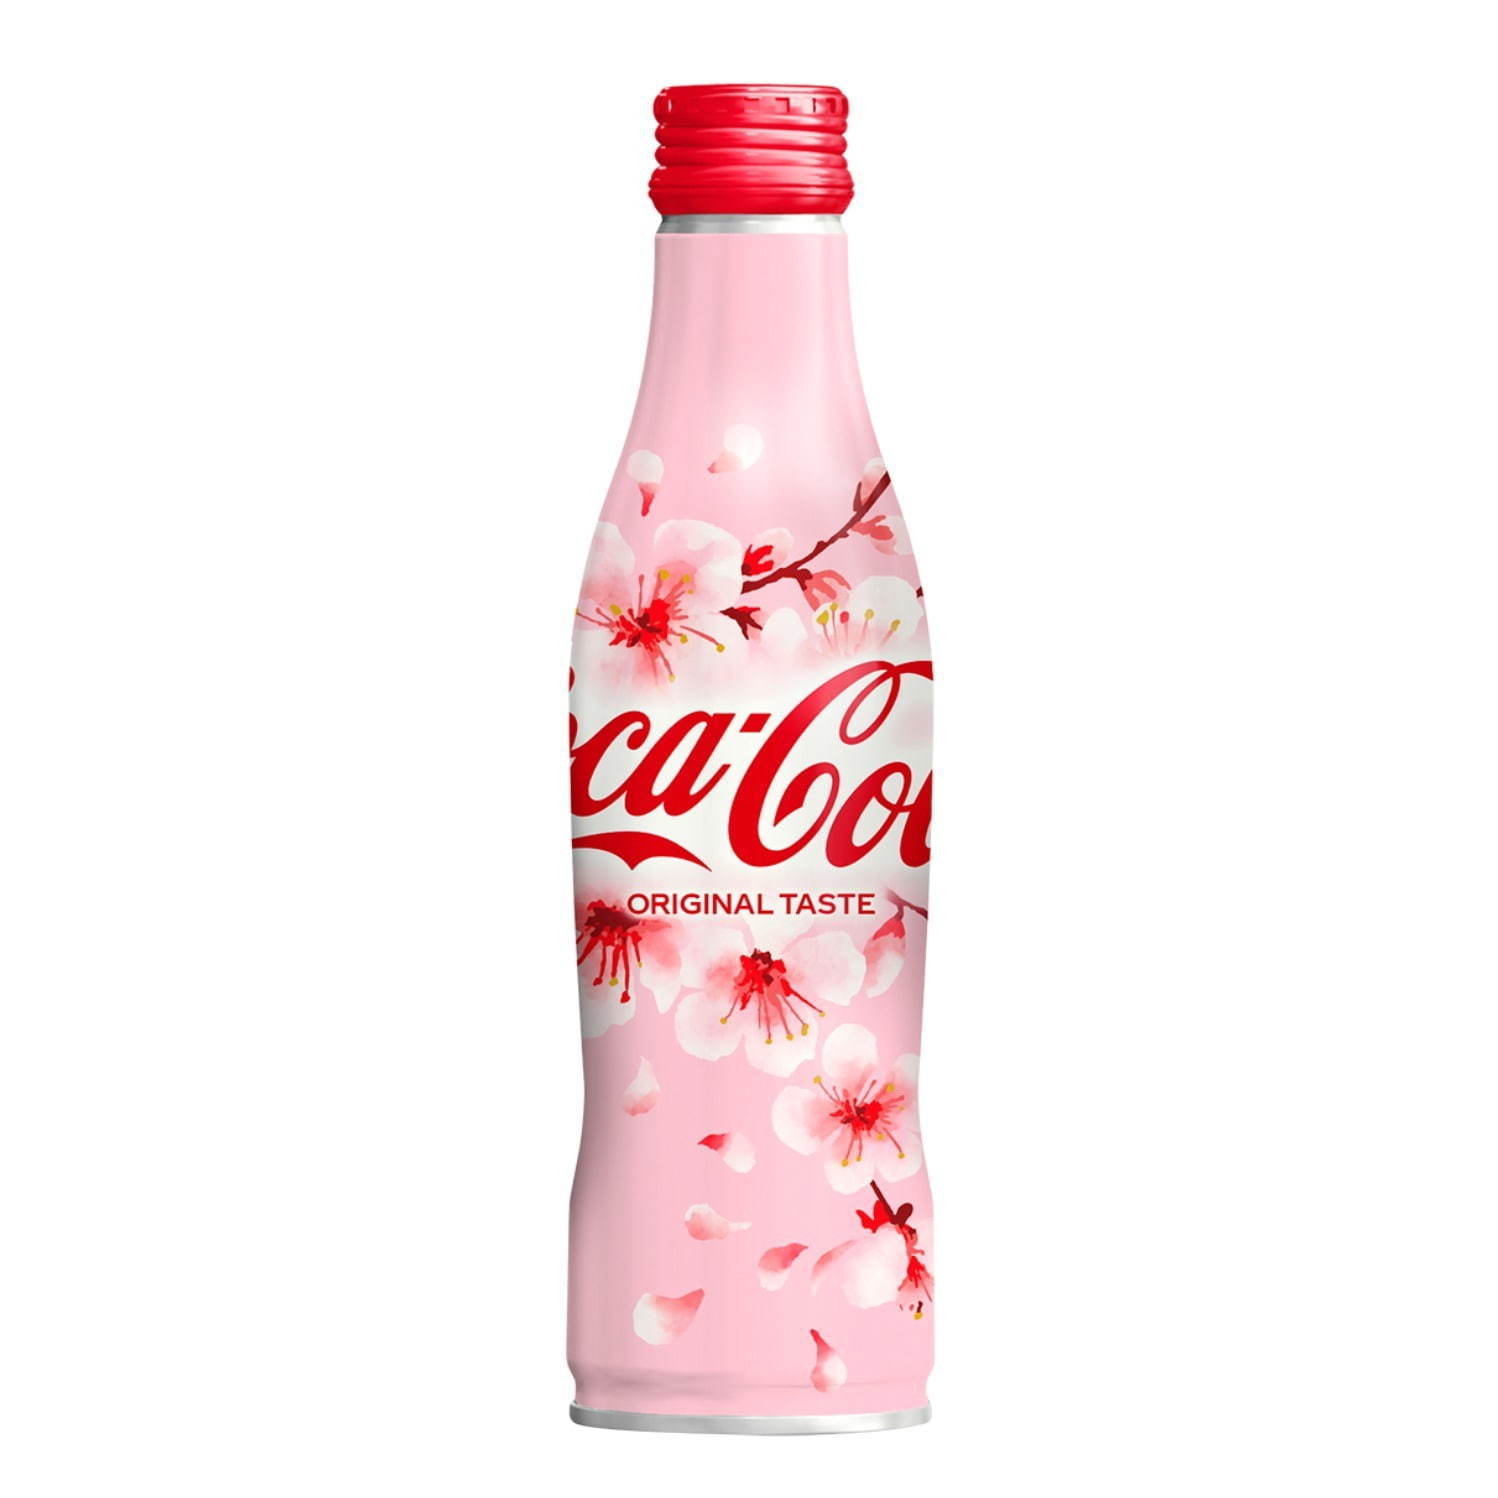 コカ・コーラから桜デザインボトル限定発売、ひらひらと舞い落ちるサクラの花をモチーフに ファッションプレス